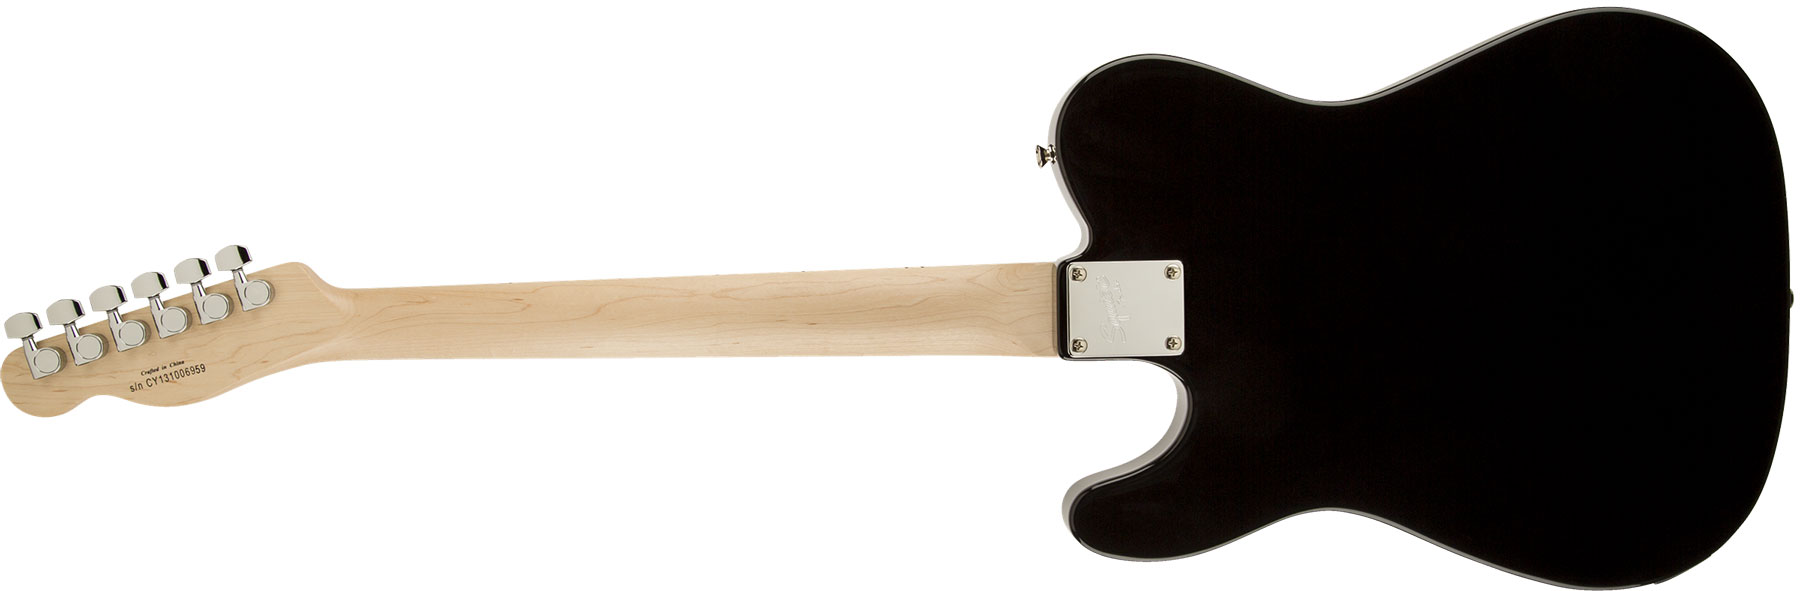 Squier Tele Affinity Series Mn - Black - Televorm elektrische gitaar - Variation 4